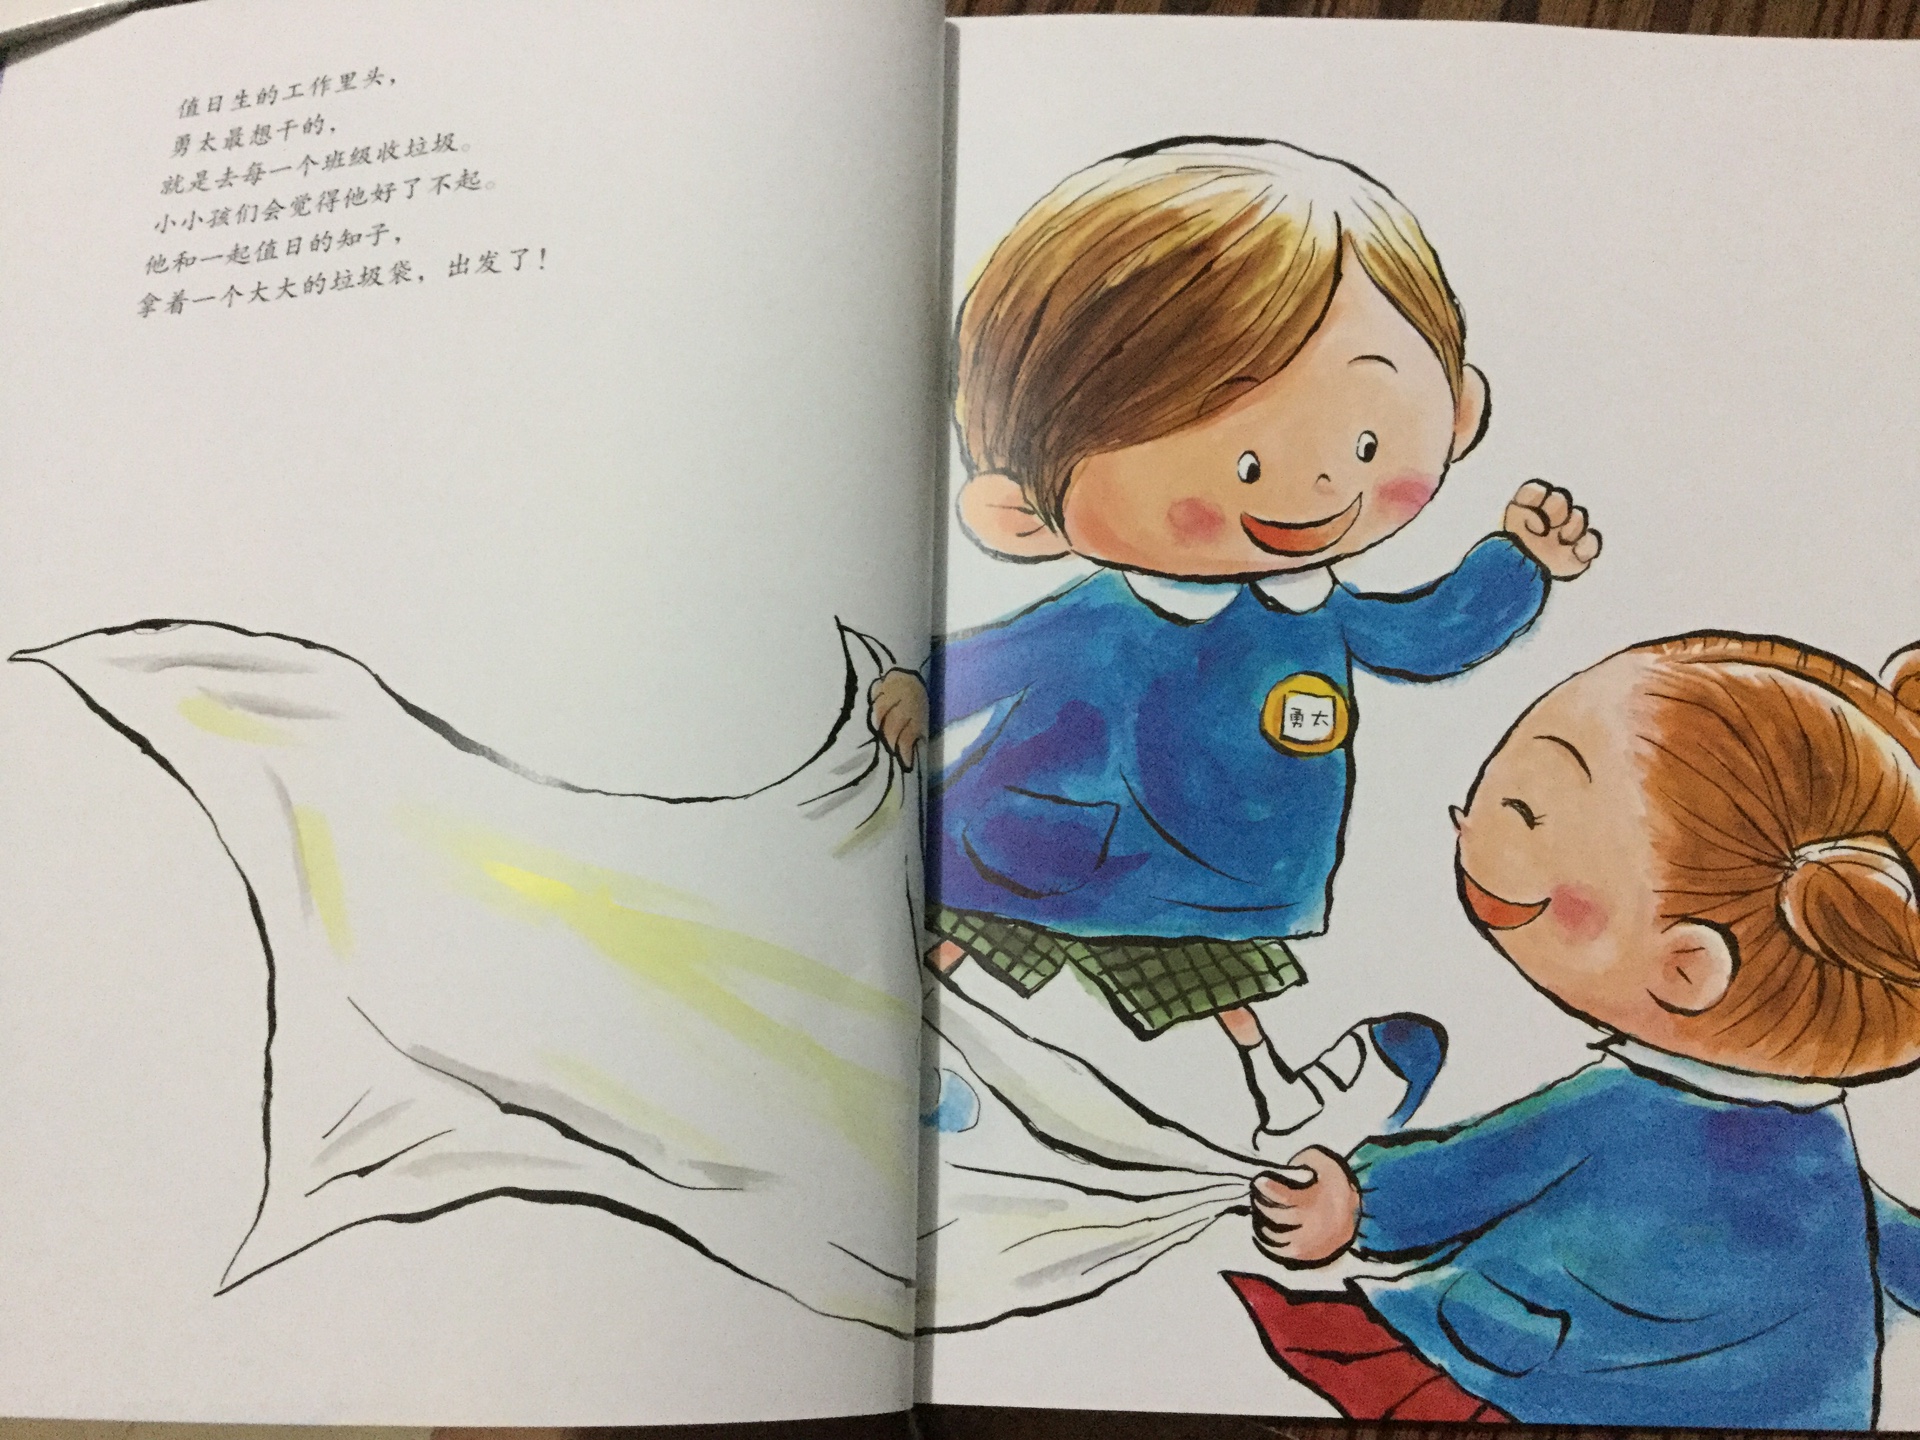 幼儿园套装，我是为了给孩子做好心理准备才买的这套书。画质好，纸厚，印刷好，比较满意哦！一向喜欢日本绘本的画风和剧情，这次也没失望。